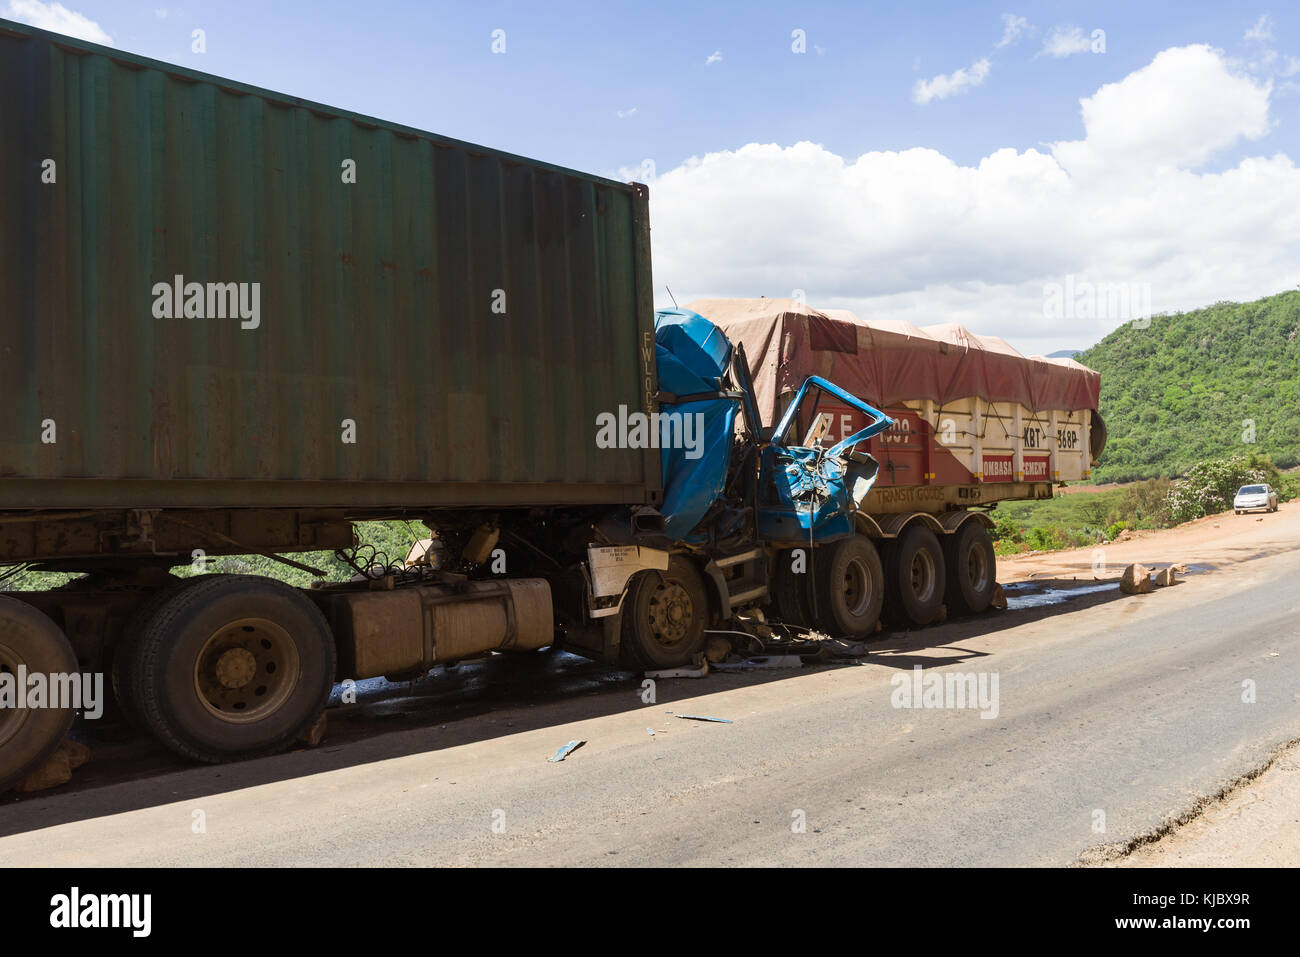 Suite d'un accident de la route impliquant deux camions sur une section de route de la vallée du Rift (aucune victime), Kenya, Afrique de l'Est Banque D'Images